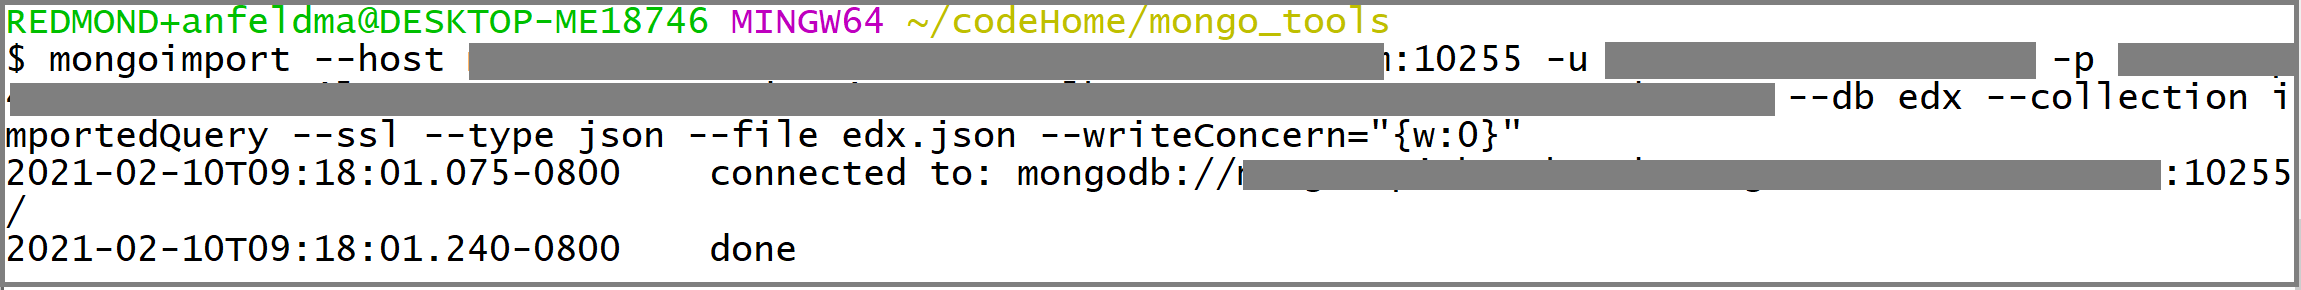 Képernyőkép a mongoimport-hívásról.